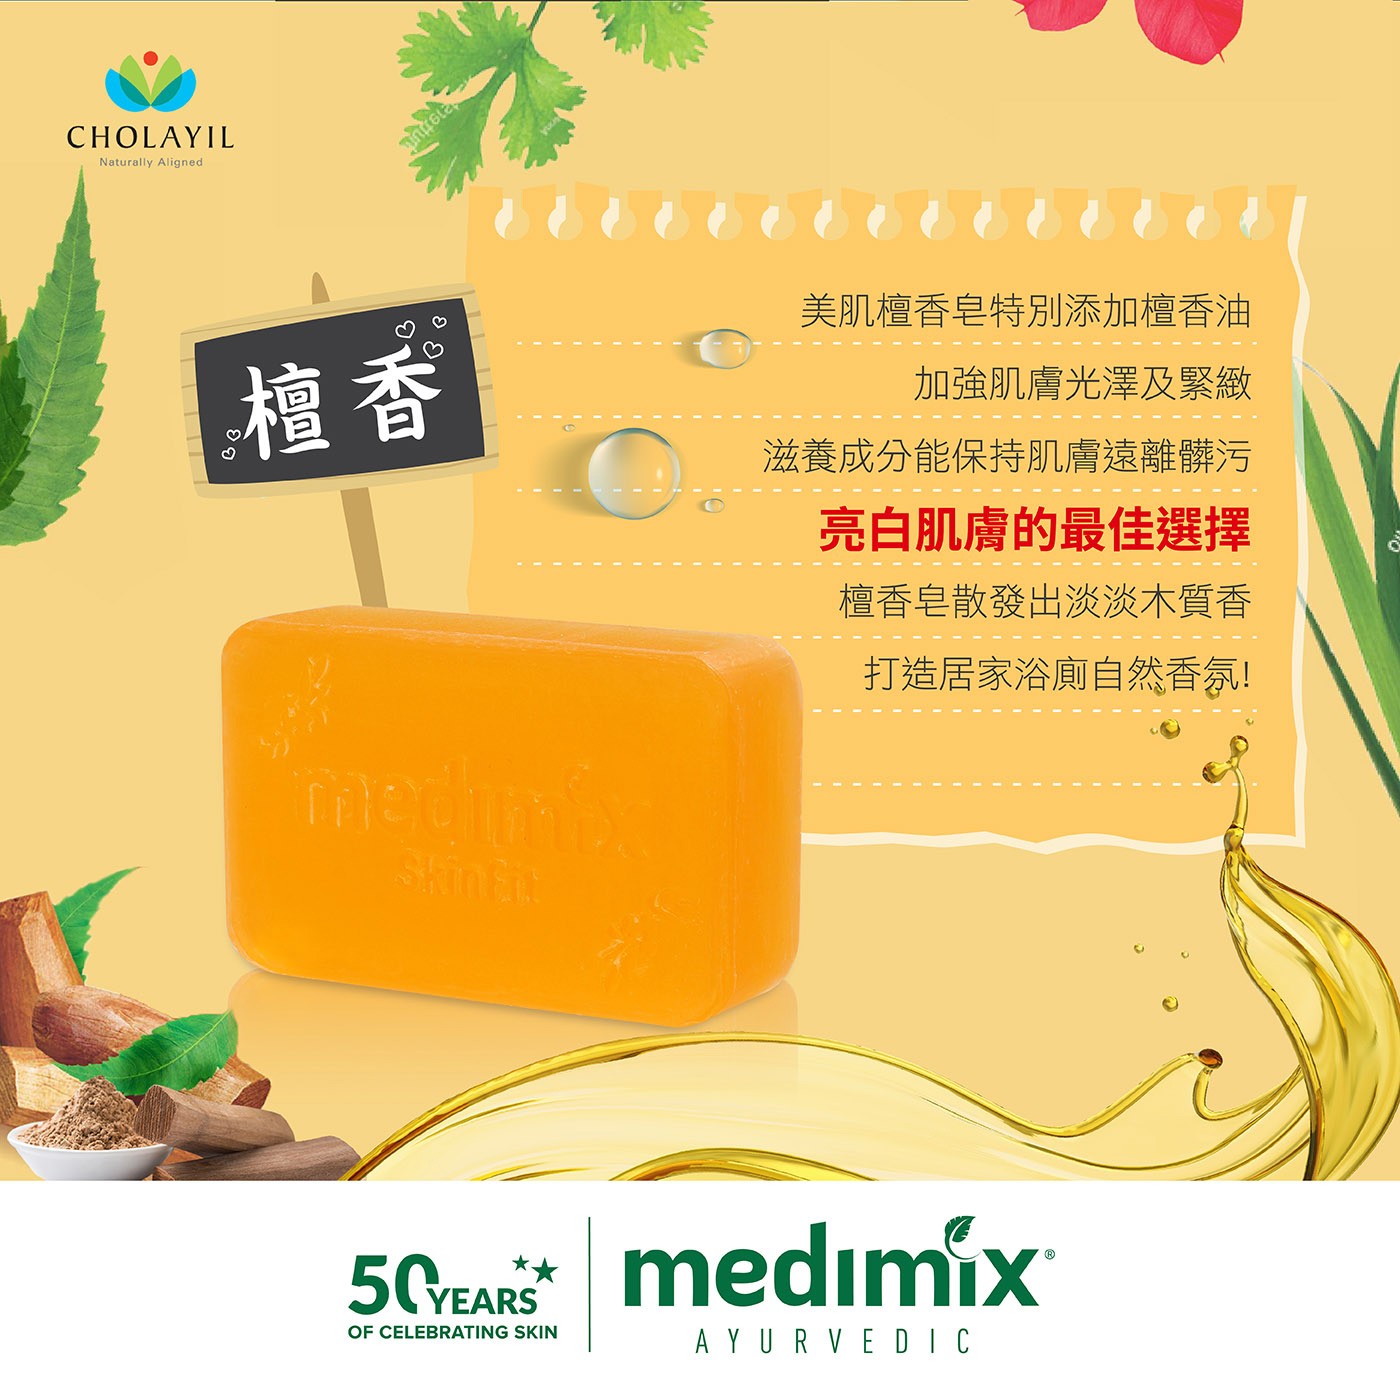 Medimix 印度綠寶石皇室藥草浴美肌皂 添加檀香精油 加強肌膚光澤及緊緻 為亮白肌膚最佳選擇